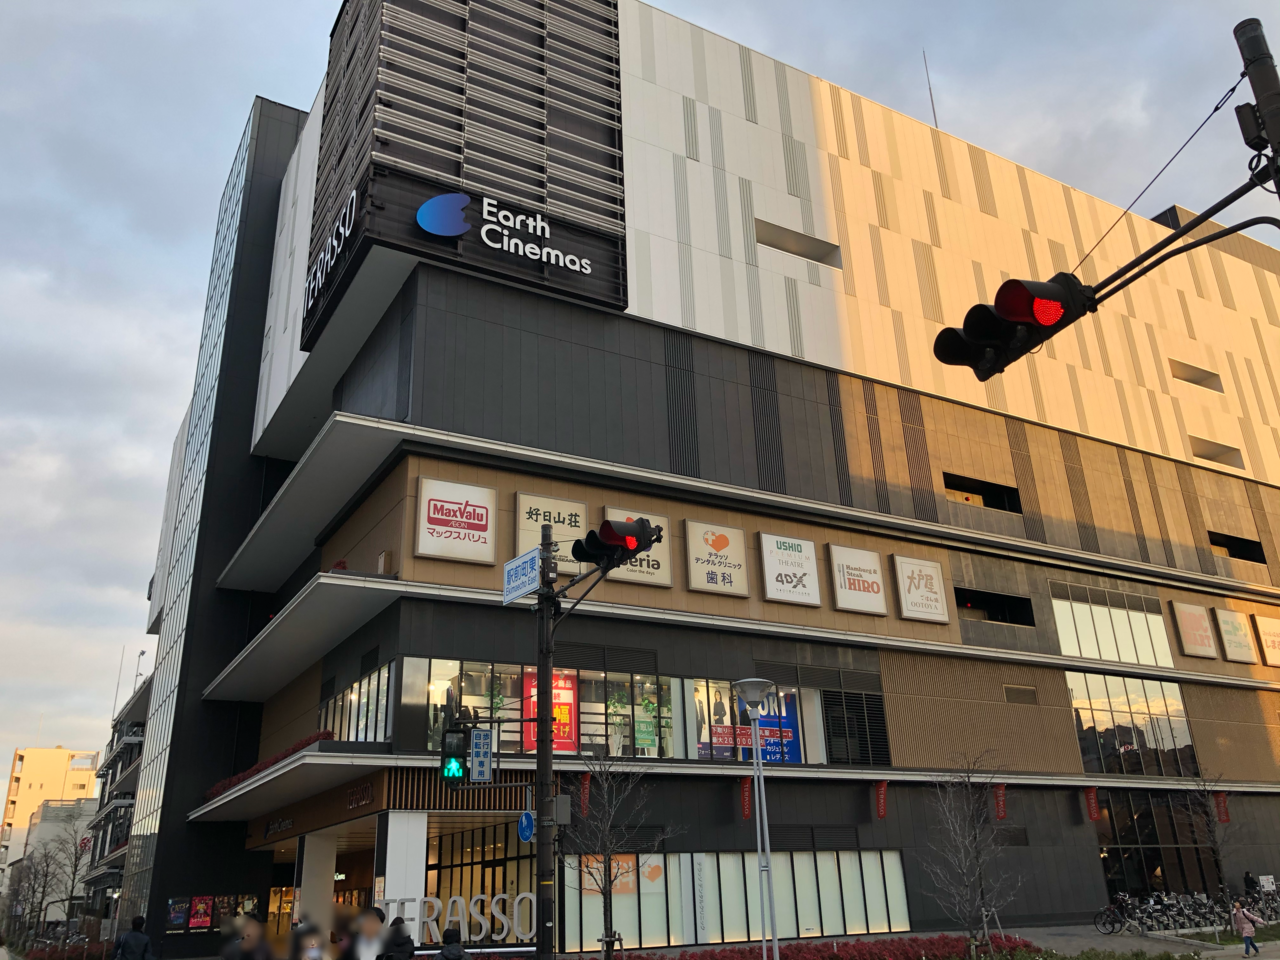 姫路市 3月日 金 からアースシネマズ姫路に西日本初となる 体験型シアター 4dx Screen が導入されるそうです 号外net 姫路市